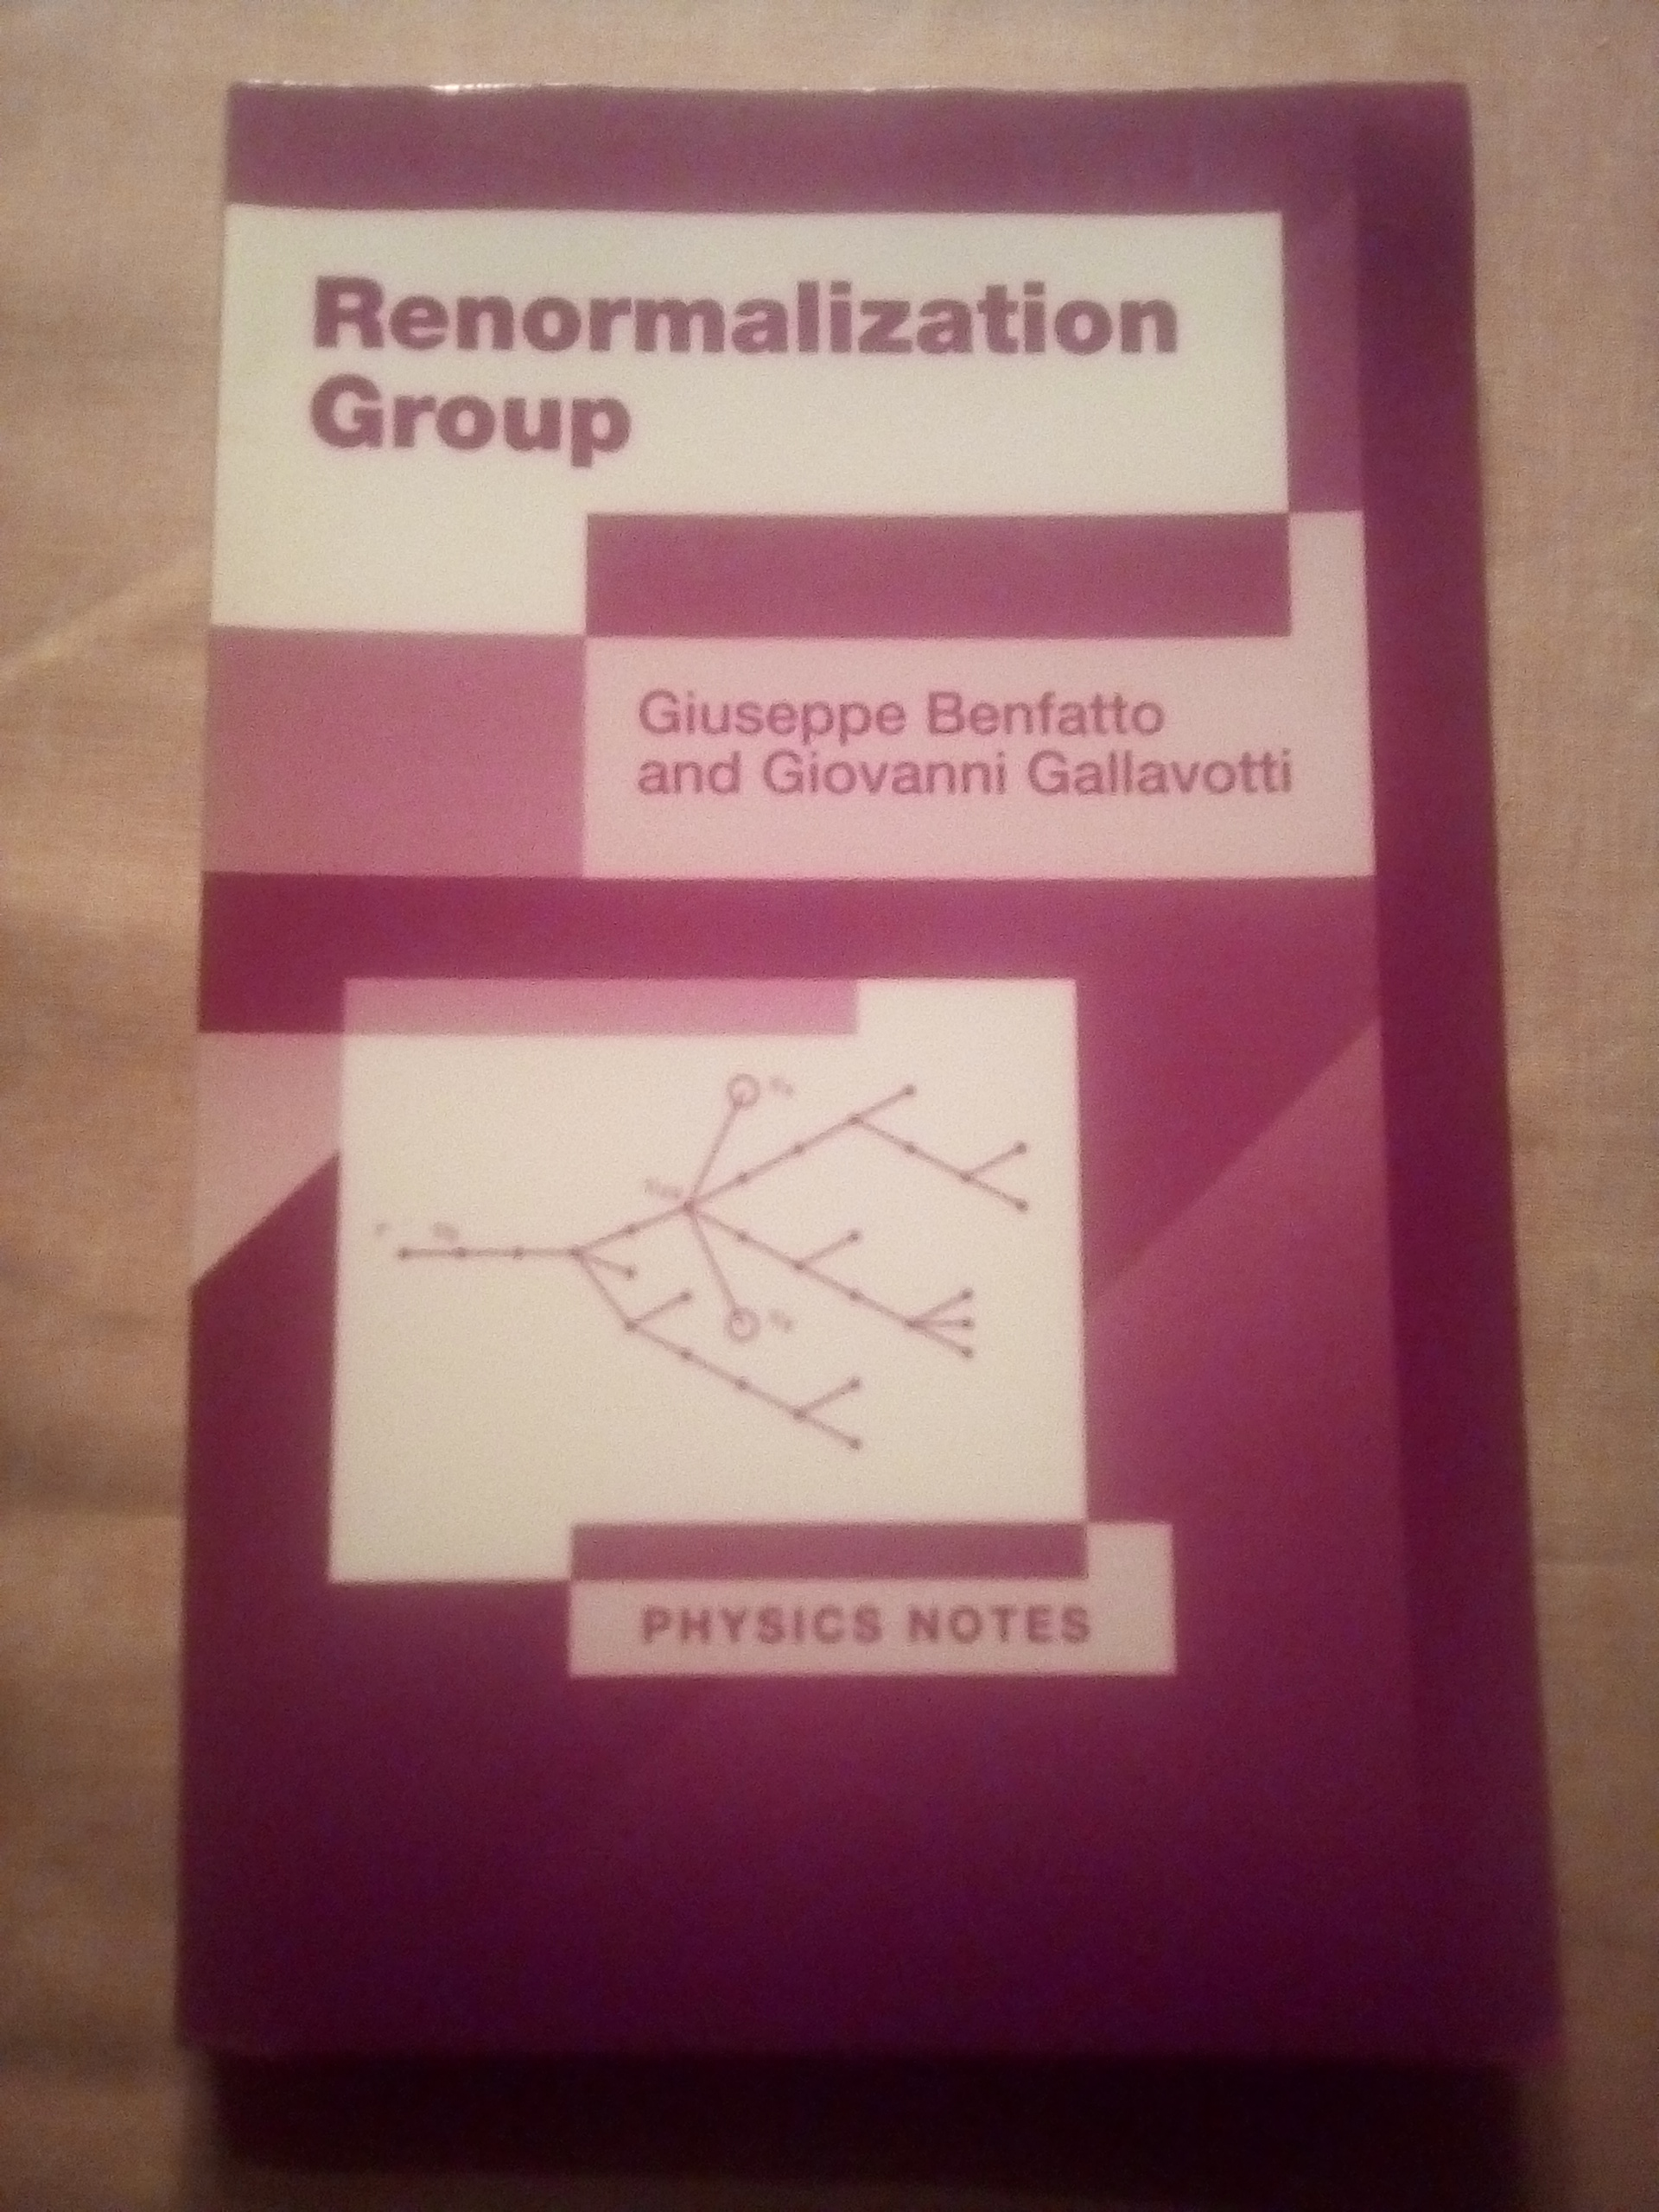 Renormalization Group - Benfatto, Giuseppe and Gallavotti, Giovanni